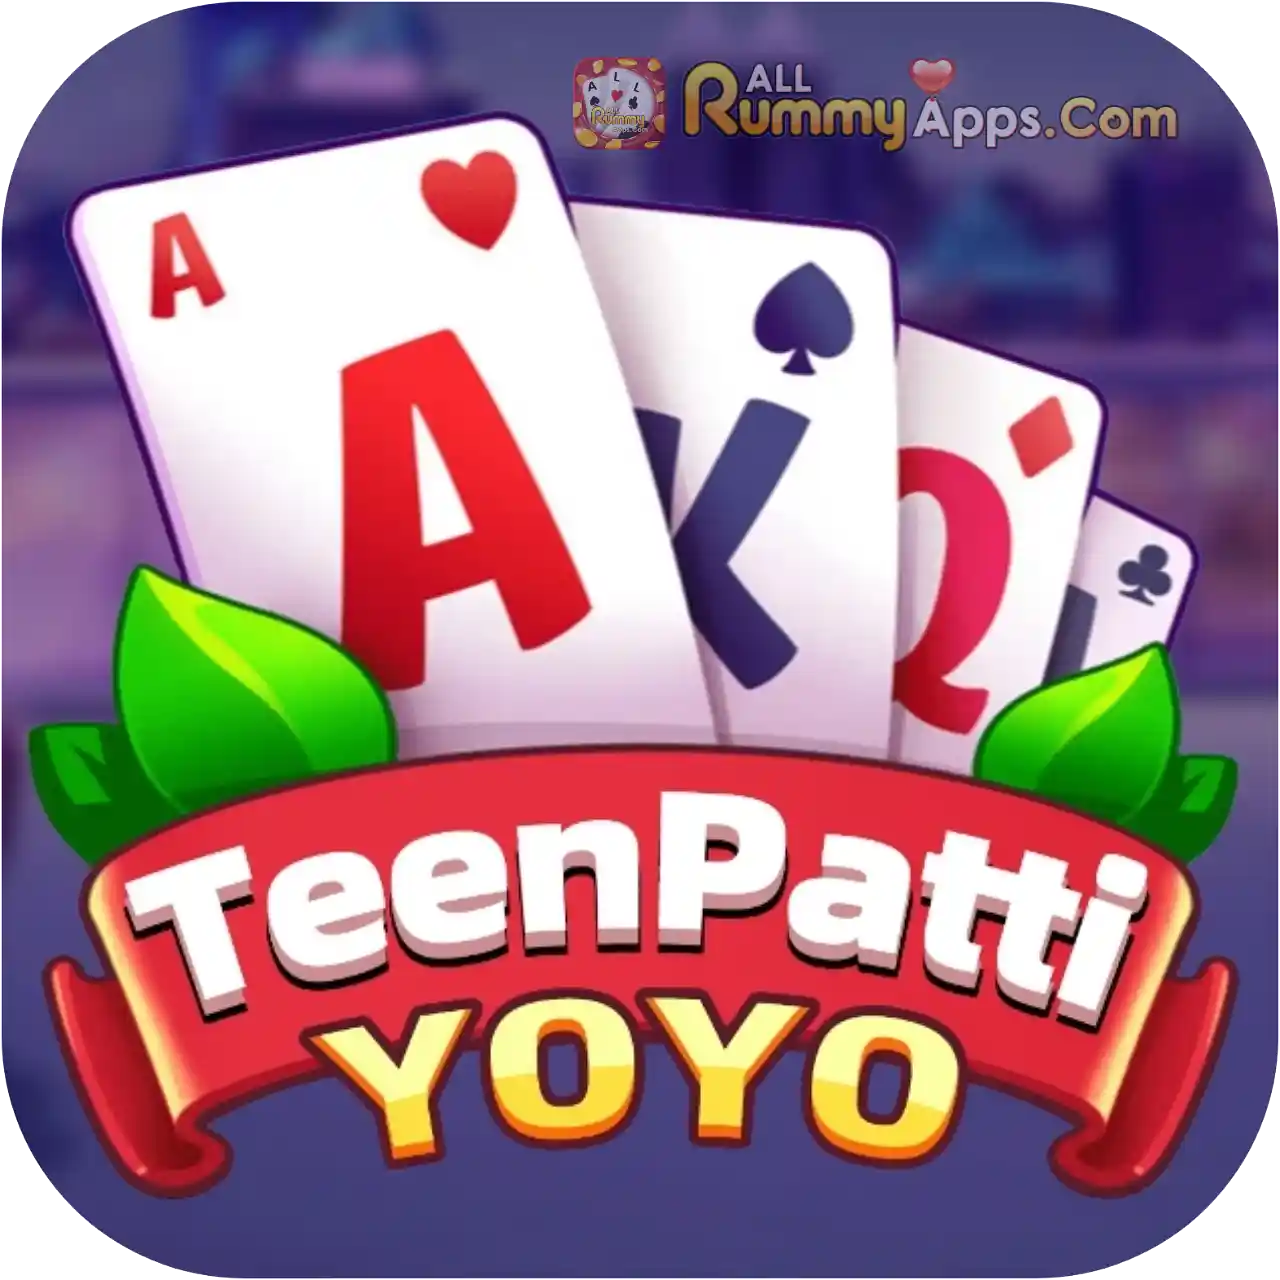 Teen Patti Yoyo - New Rummy App List